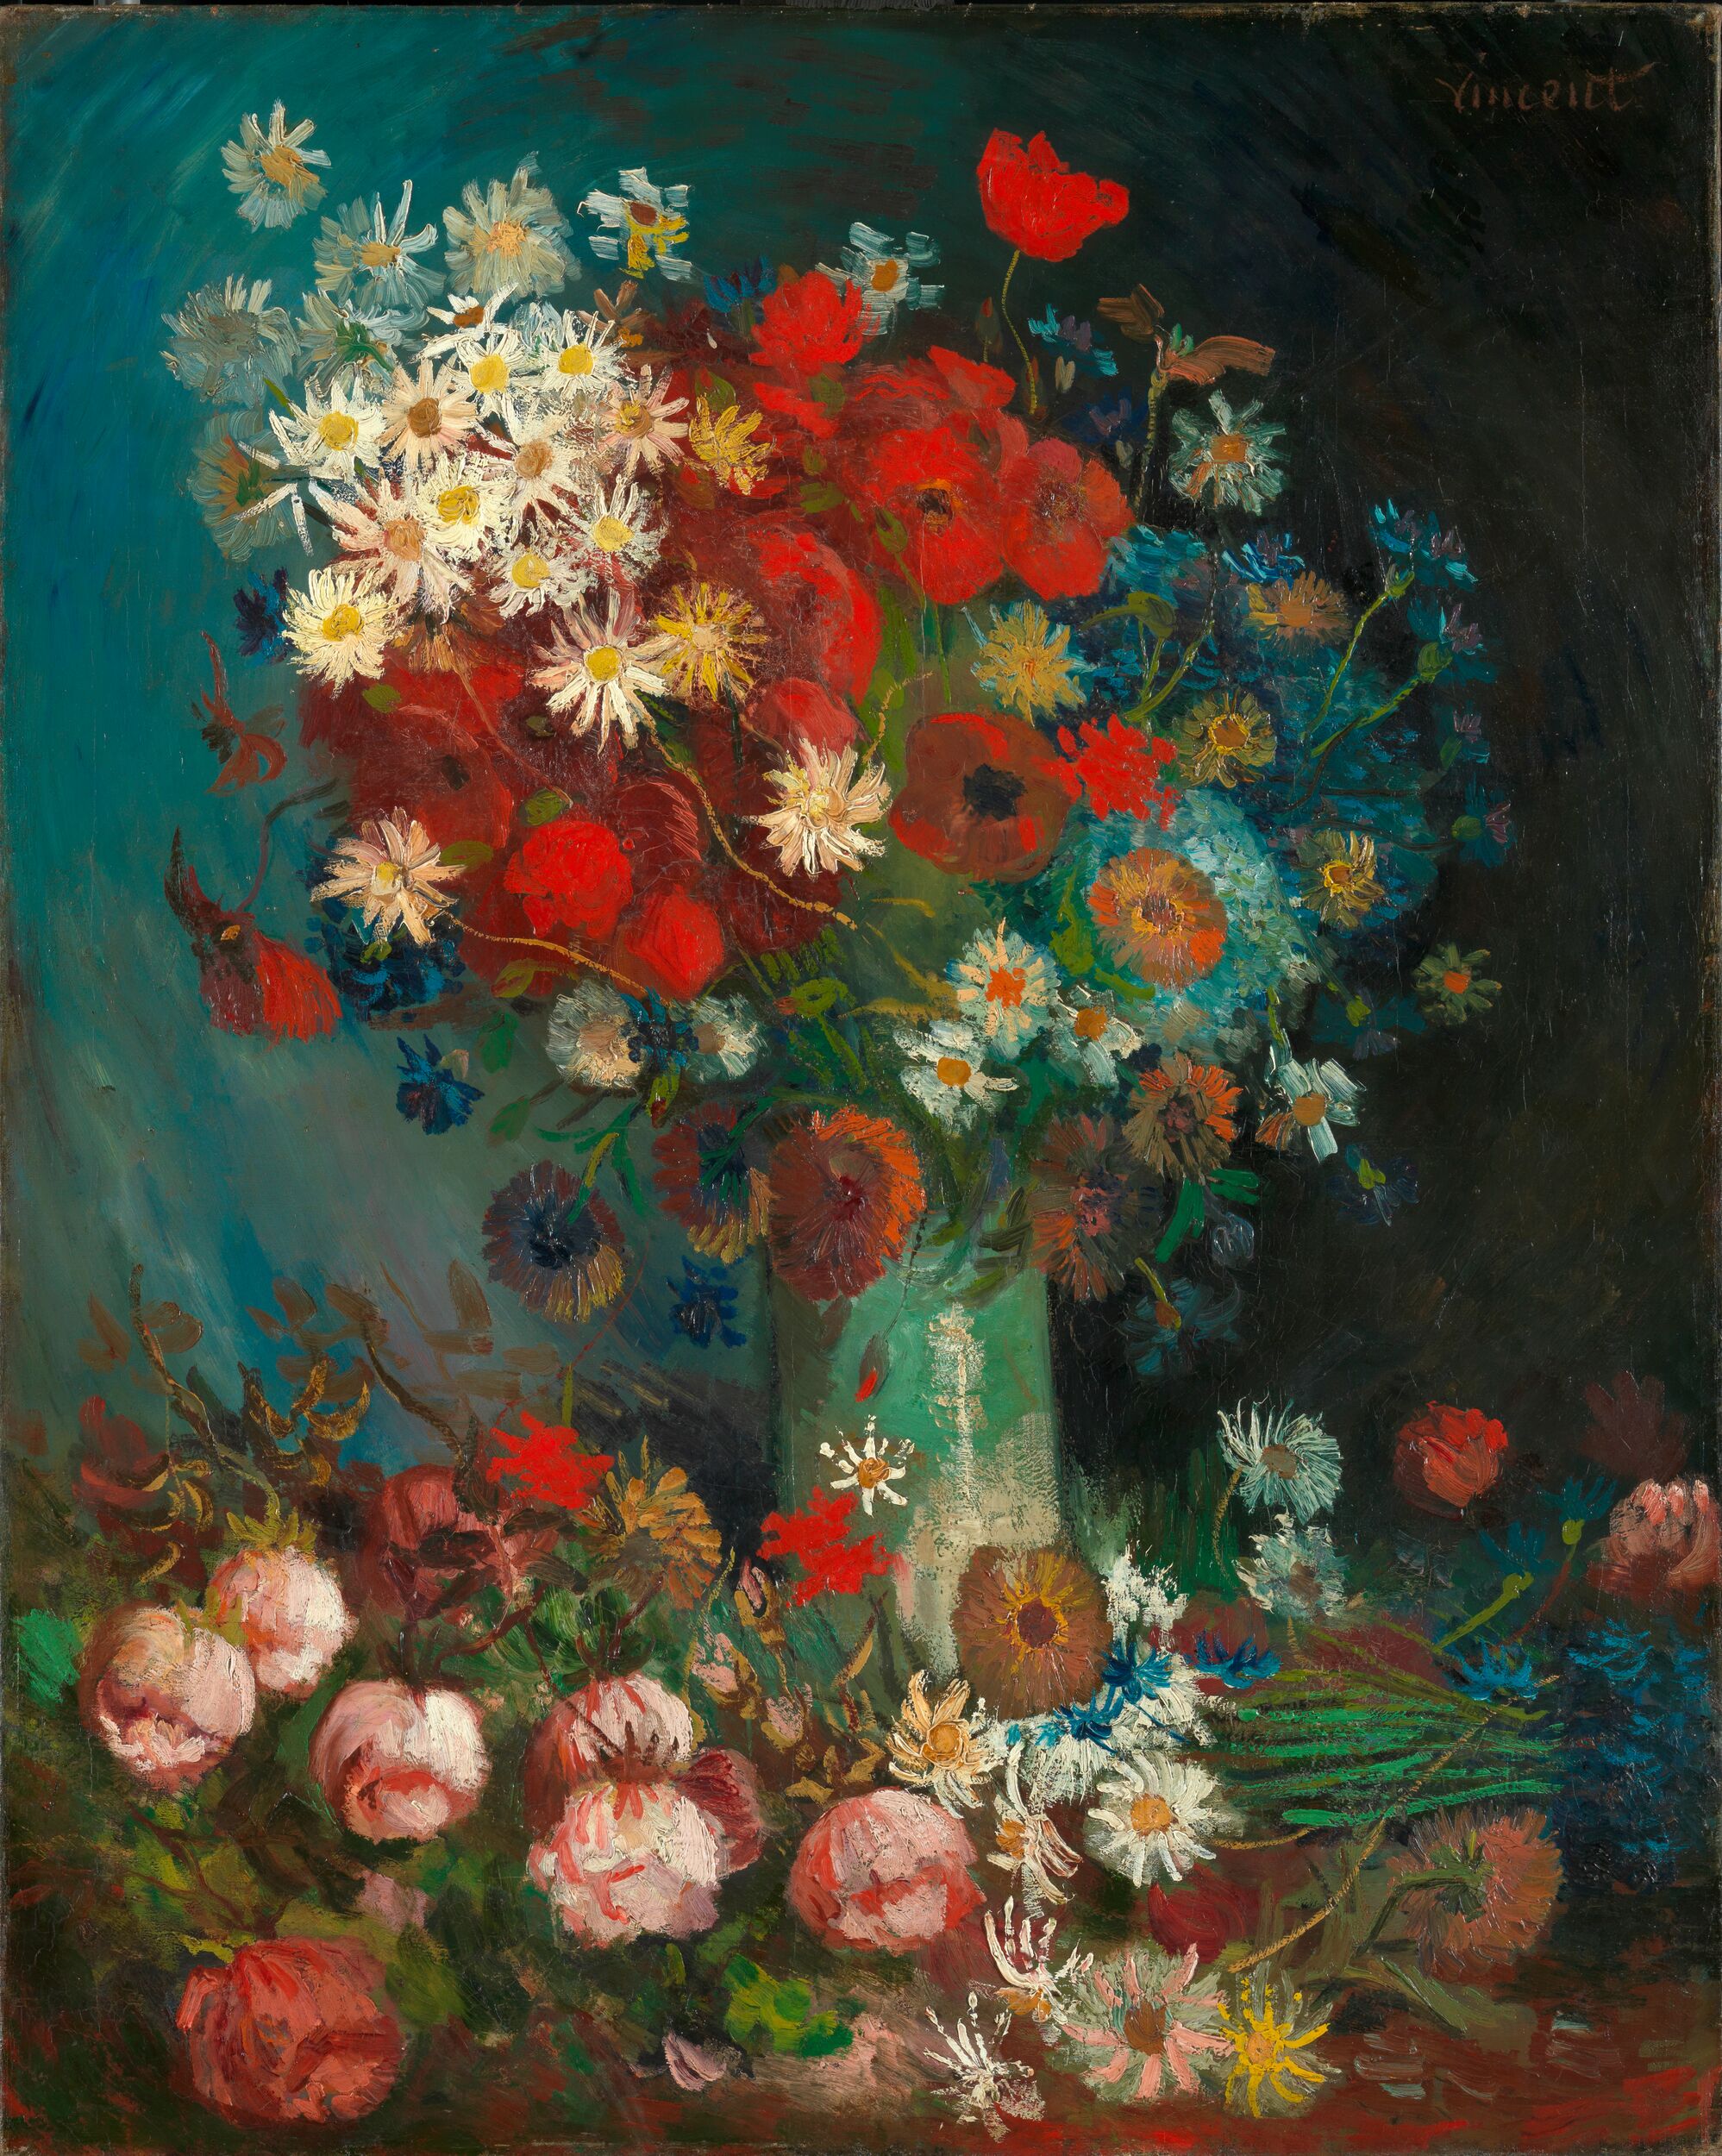 草地野花與玫瑰靜物畫 by Vincent van Gogh - 1886–1887年 - 100 x 70 公分 